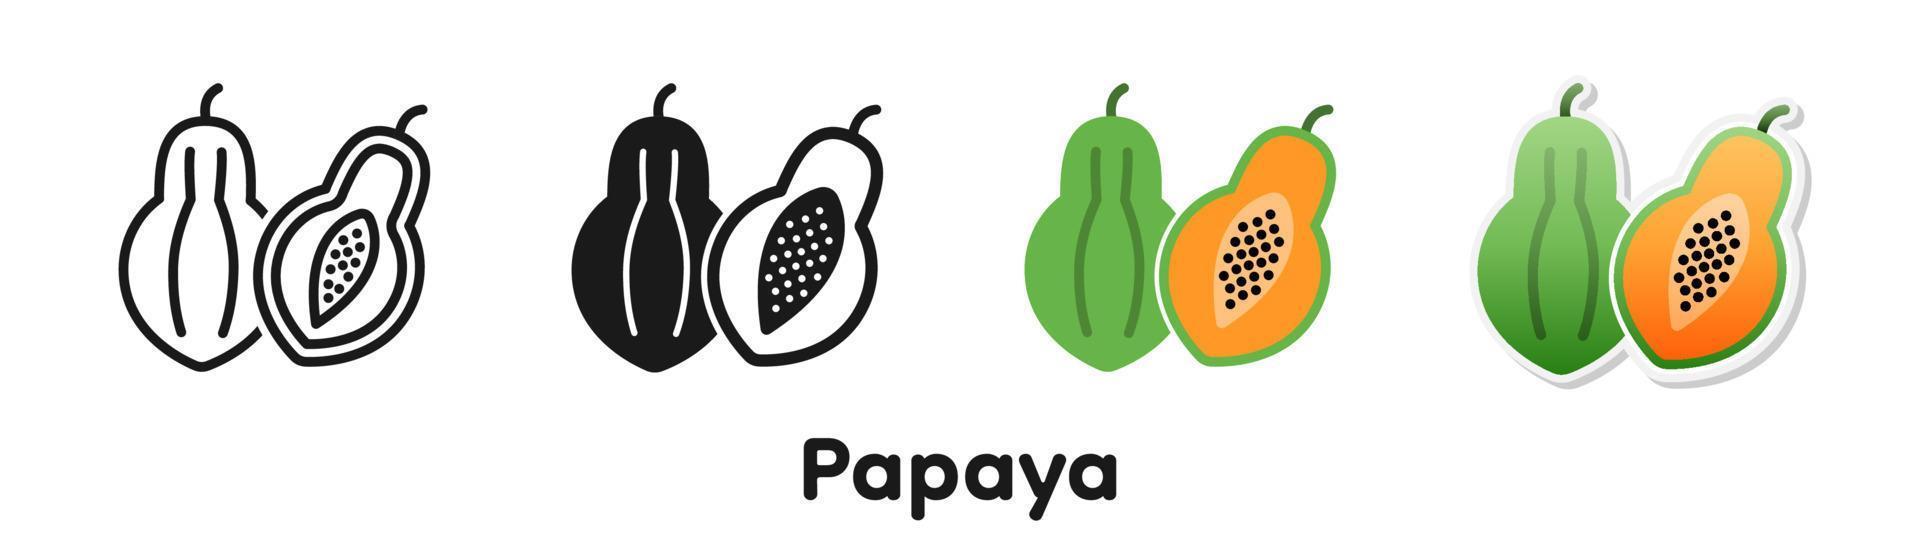 Vector icon set of Papaya.